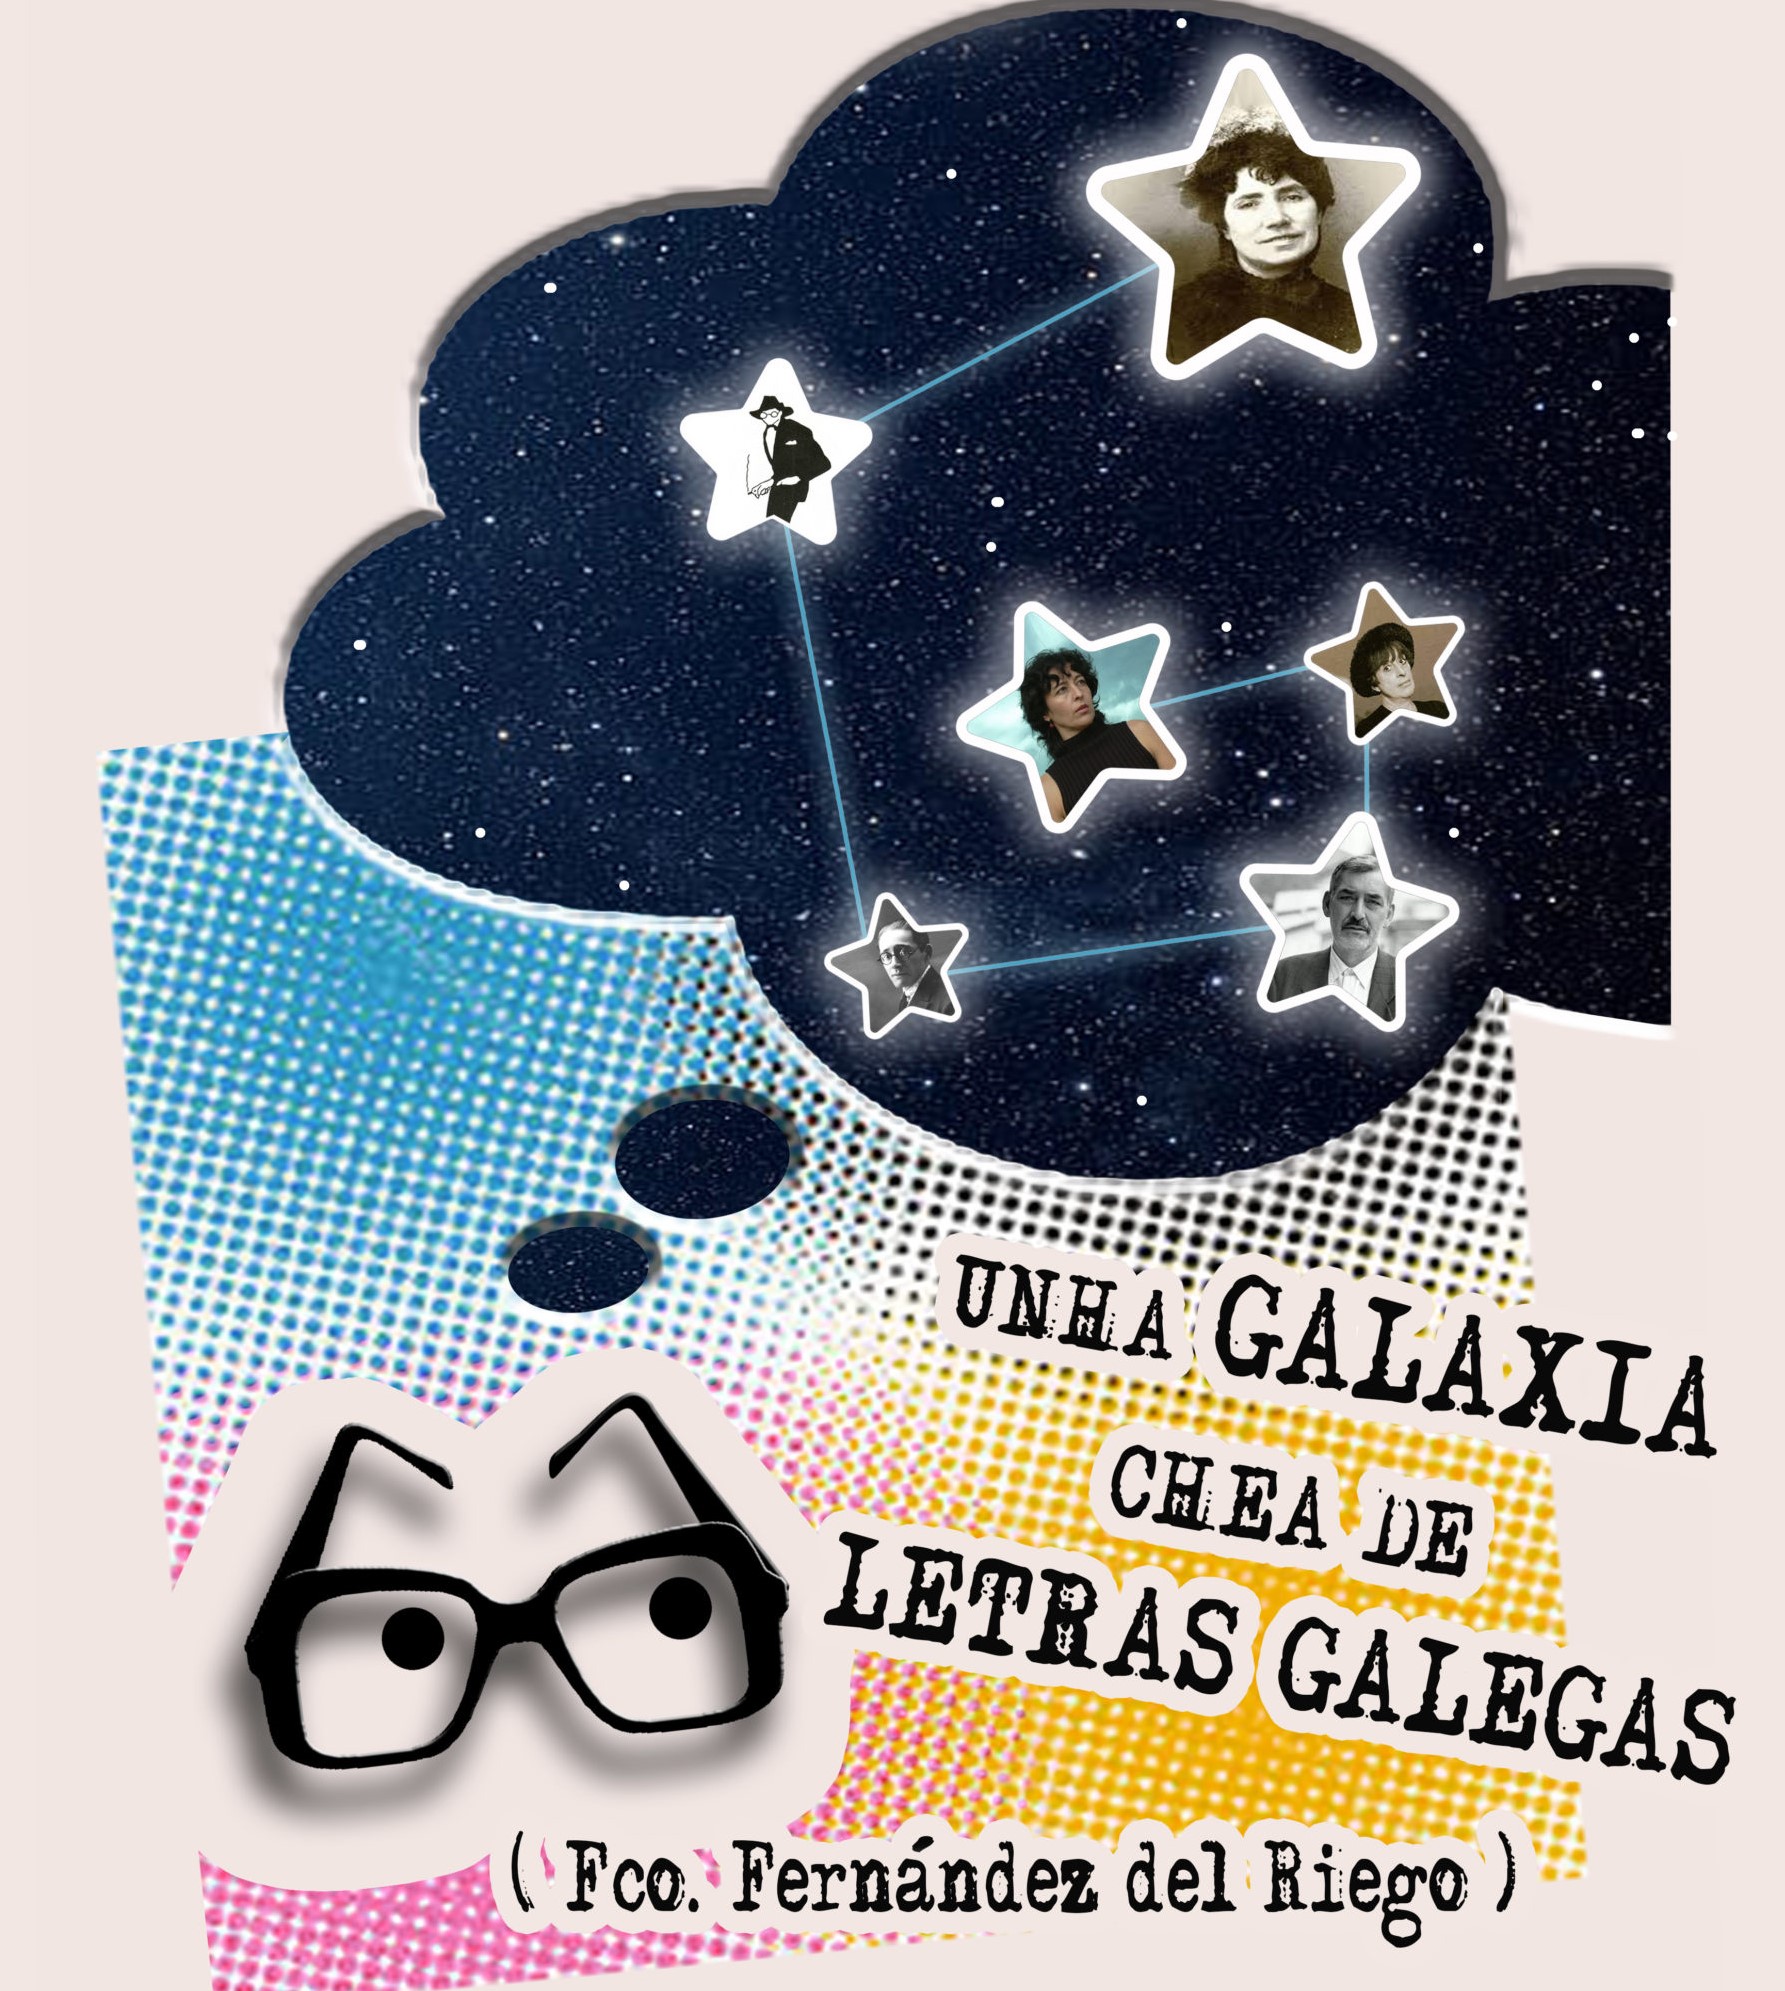 Le máis sobre o artigo Unha galaxia chea de Letras Galegas de Caxoto